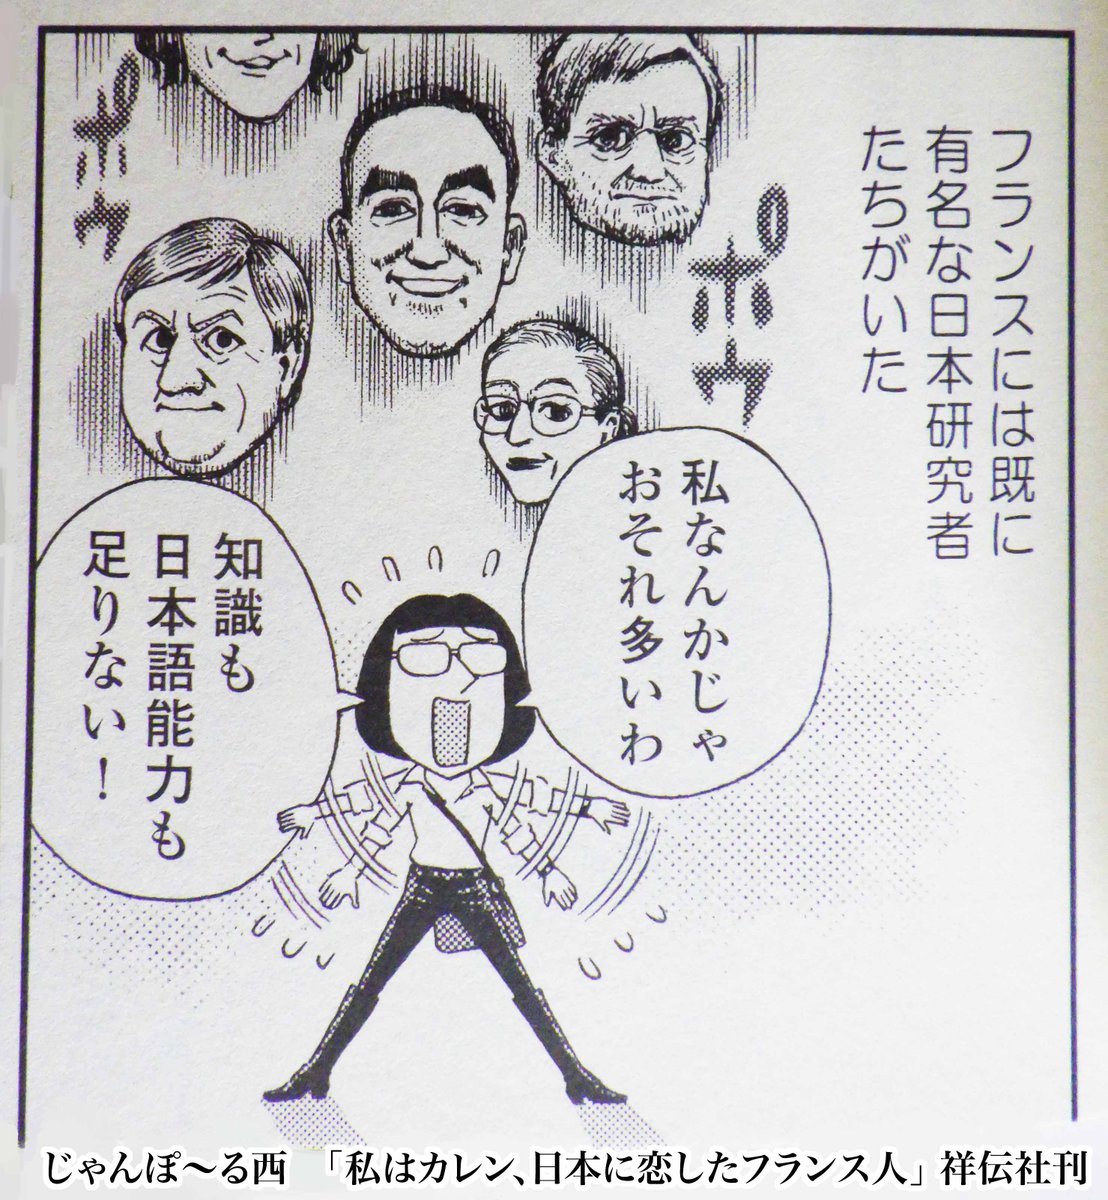 次は「私はカレン、日本に恋したフランス人」から。
「"日本人"をテーマにした本を書かないか」とフランスの出版社に依頼された主人公が迷うシーン。
後ろに浮かぶ「日本研究者たち」のイメージの中の左下の人物がサブレさん。 